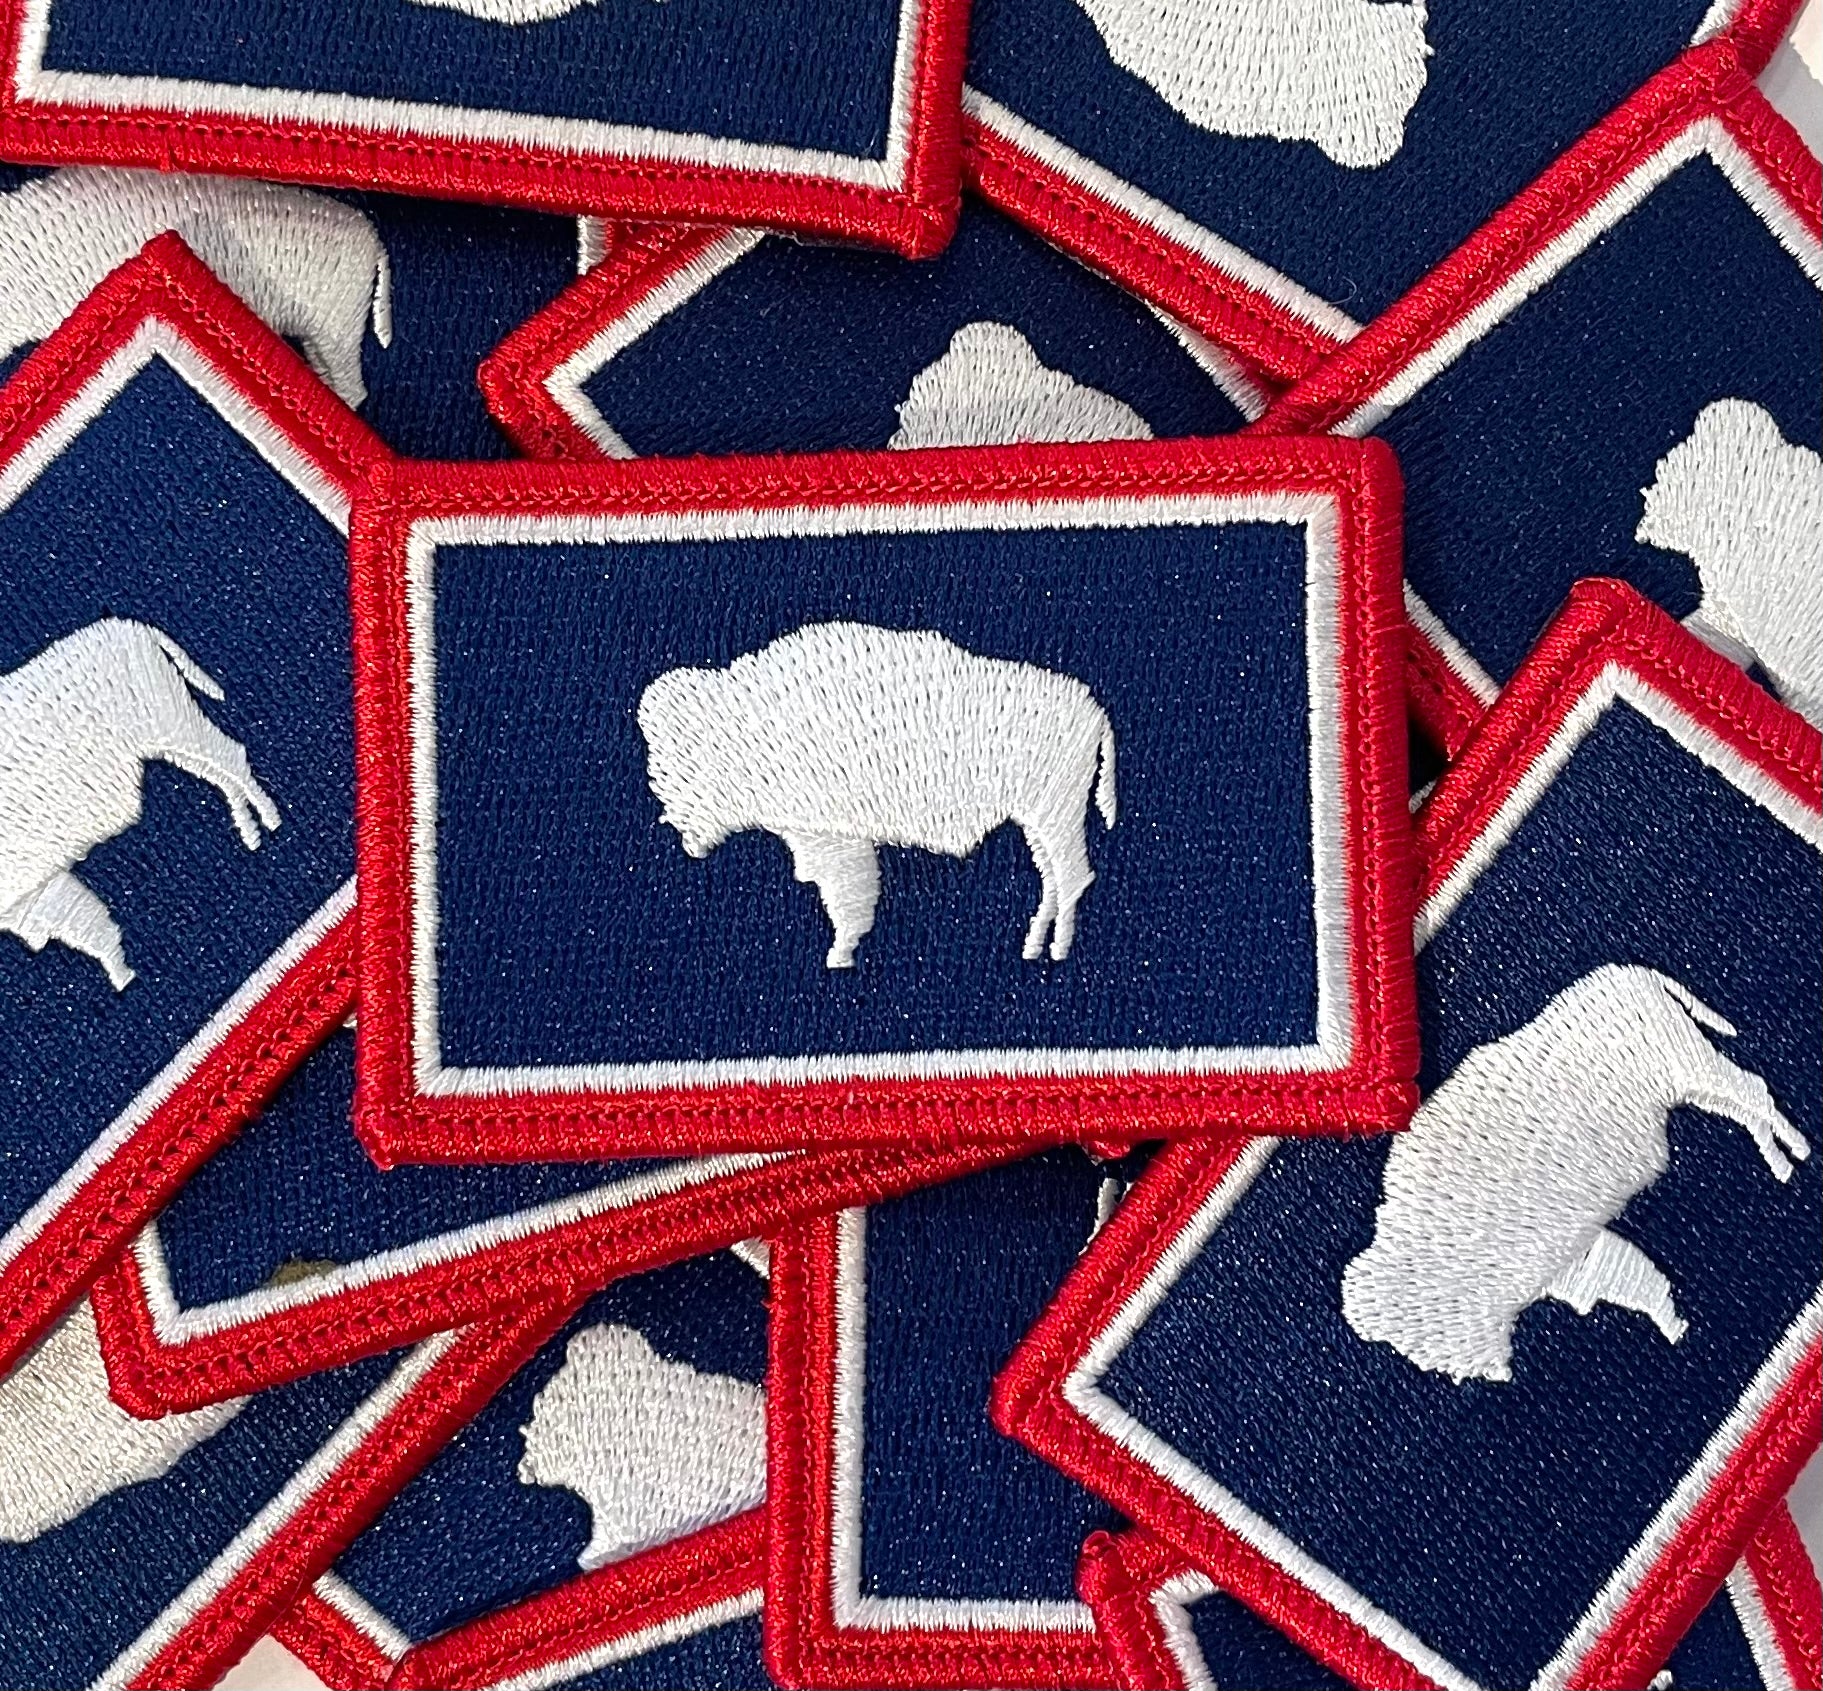 Buffalo Bills Iron on Embroidery Patch 